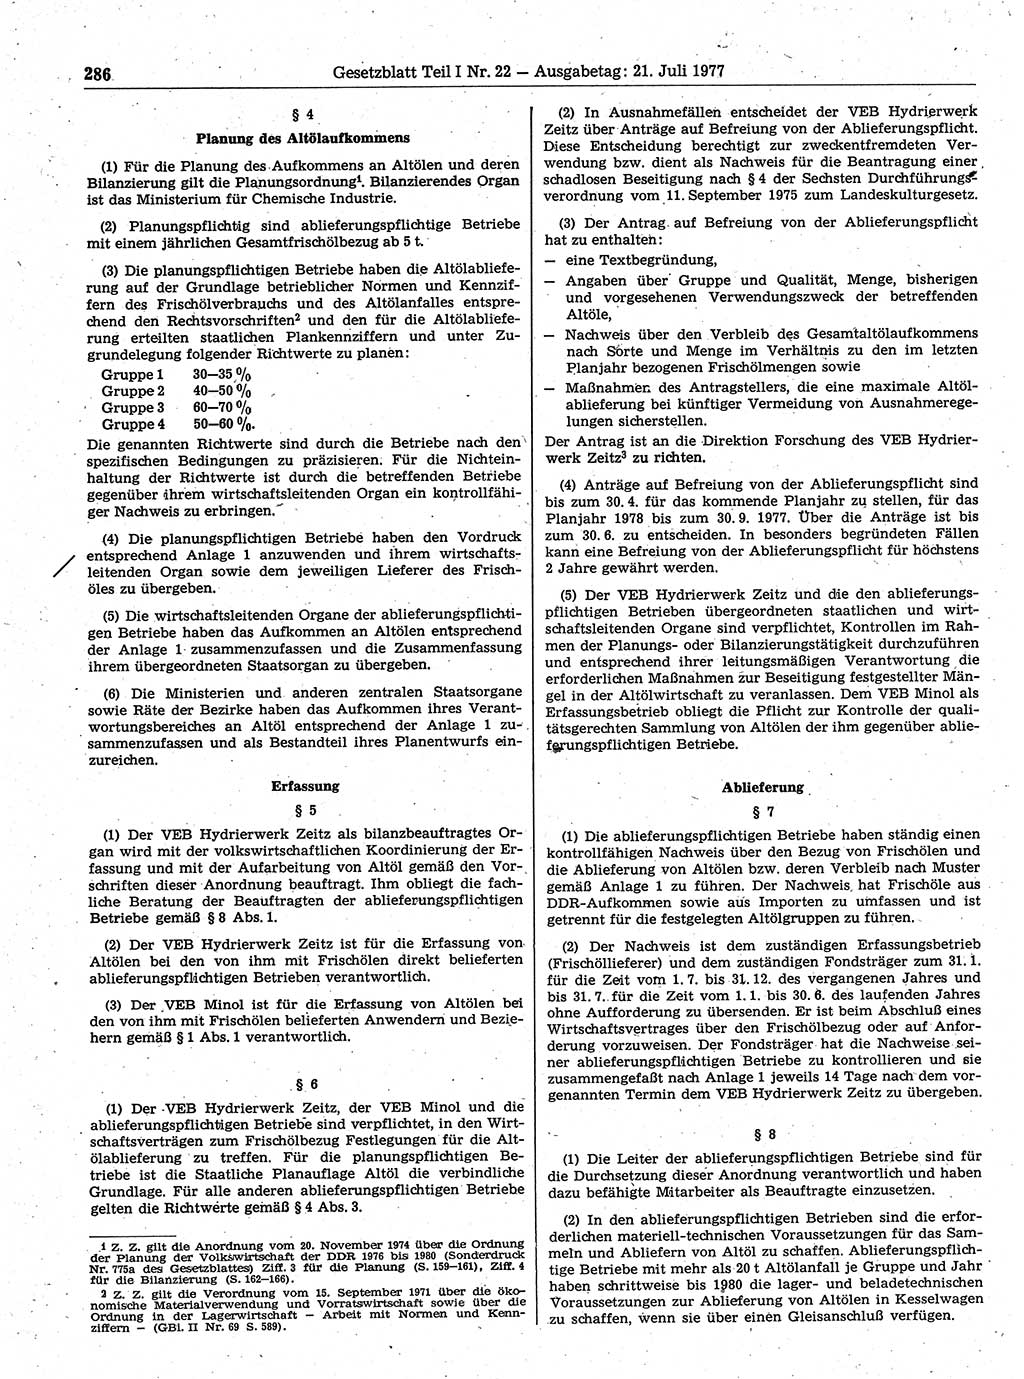 Gesetzblatt (GBl.) der Deutschen Demokratischen Republik (DDR) Teil Ⅰ 1977, Seite 286 (GBl. DDR Ⅰ 1977, S. 286)